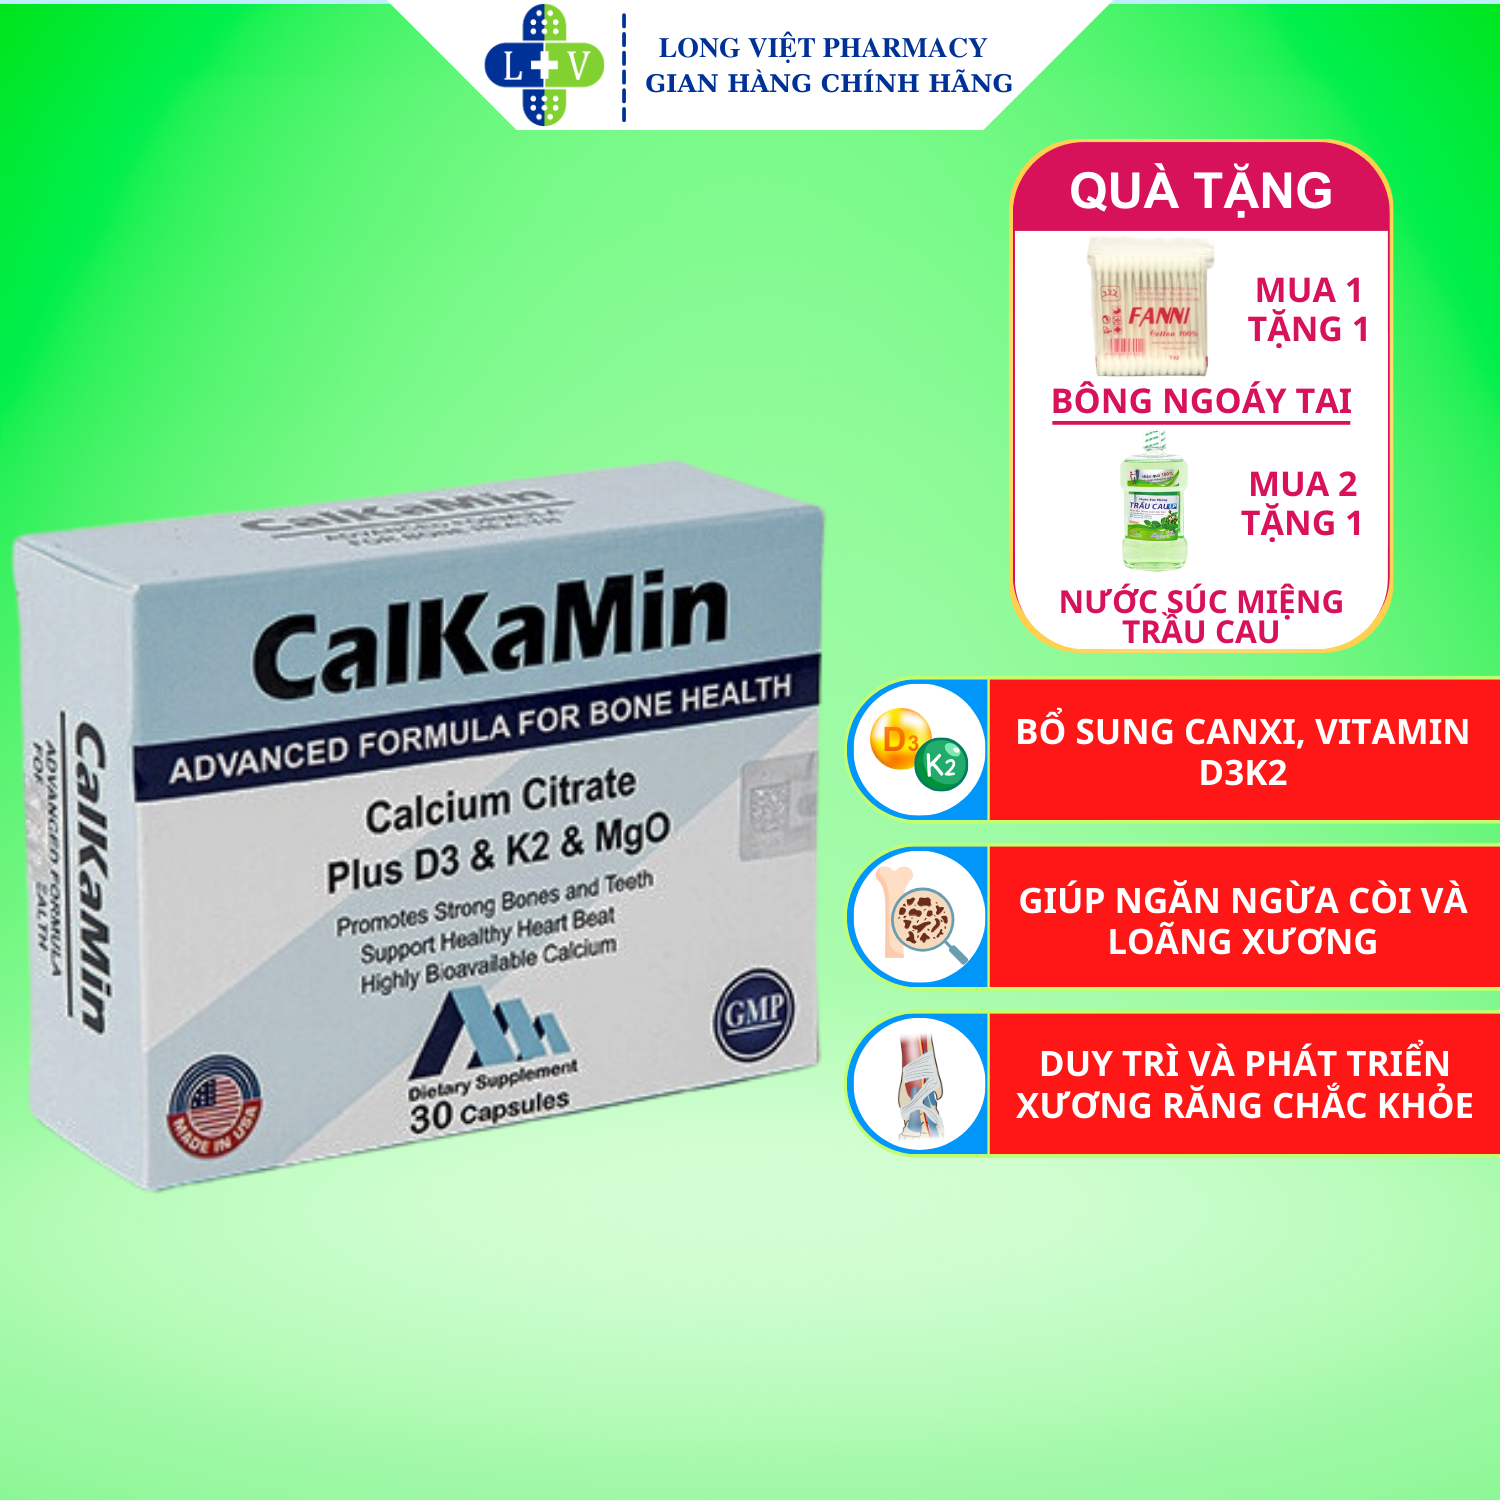 Calkamin - Bổ sung Canxi và Vitamin D3, K2 giúp răng, xương chắc khỏe hộp 30 viên